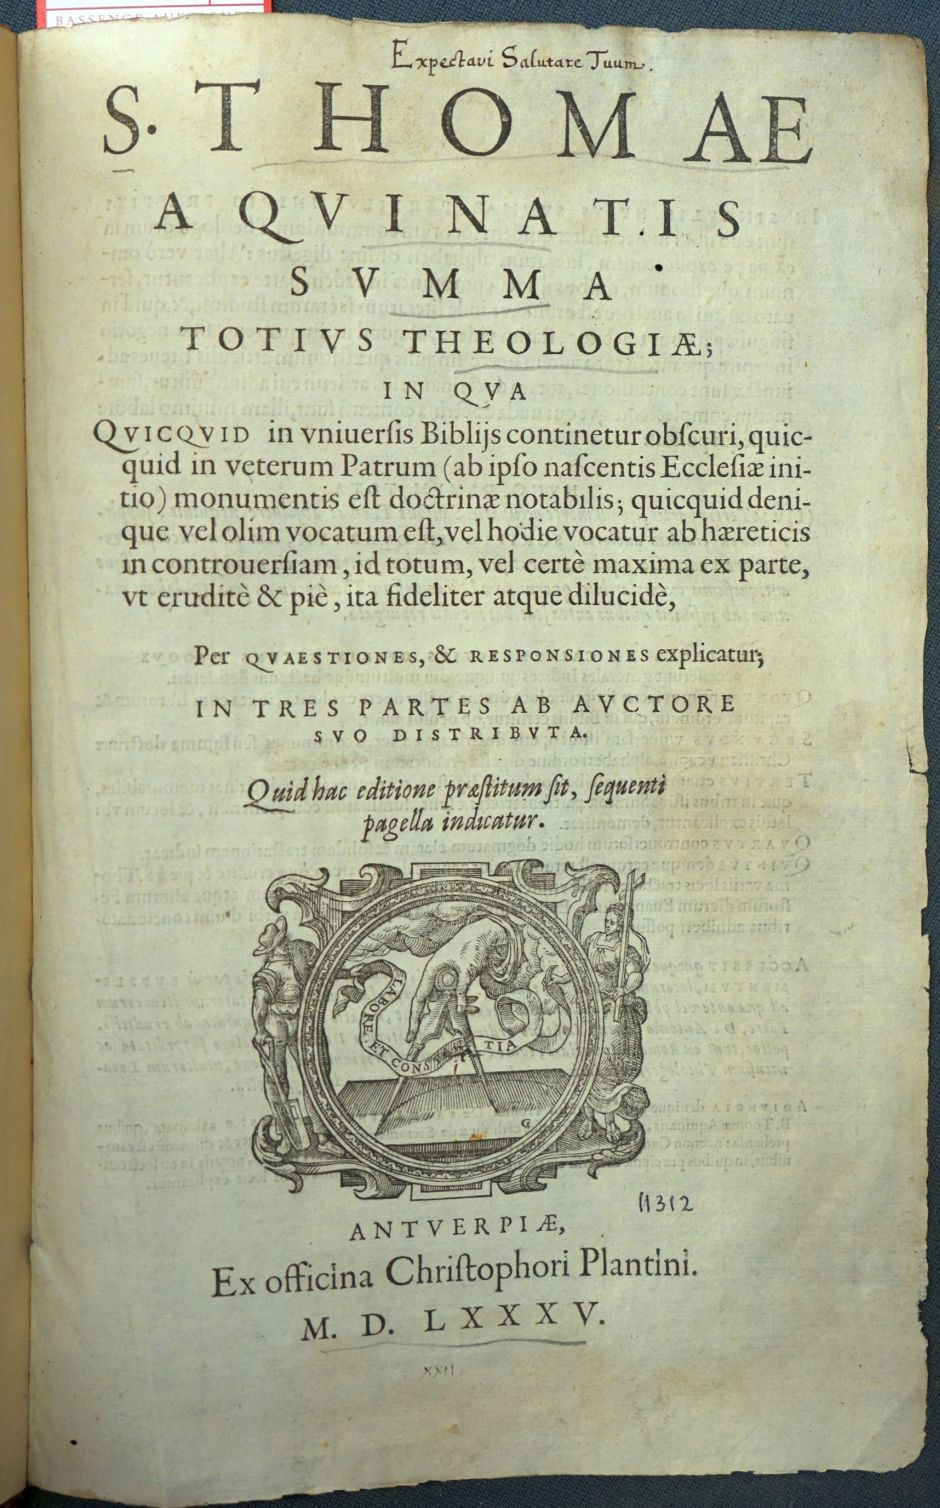 Lot 1206, Auction  115, Thomas von Aquin, Summa totius theologiae